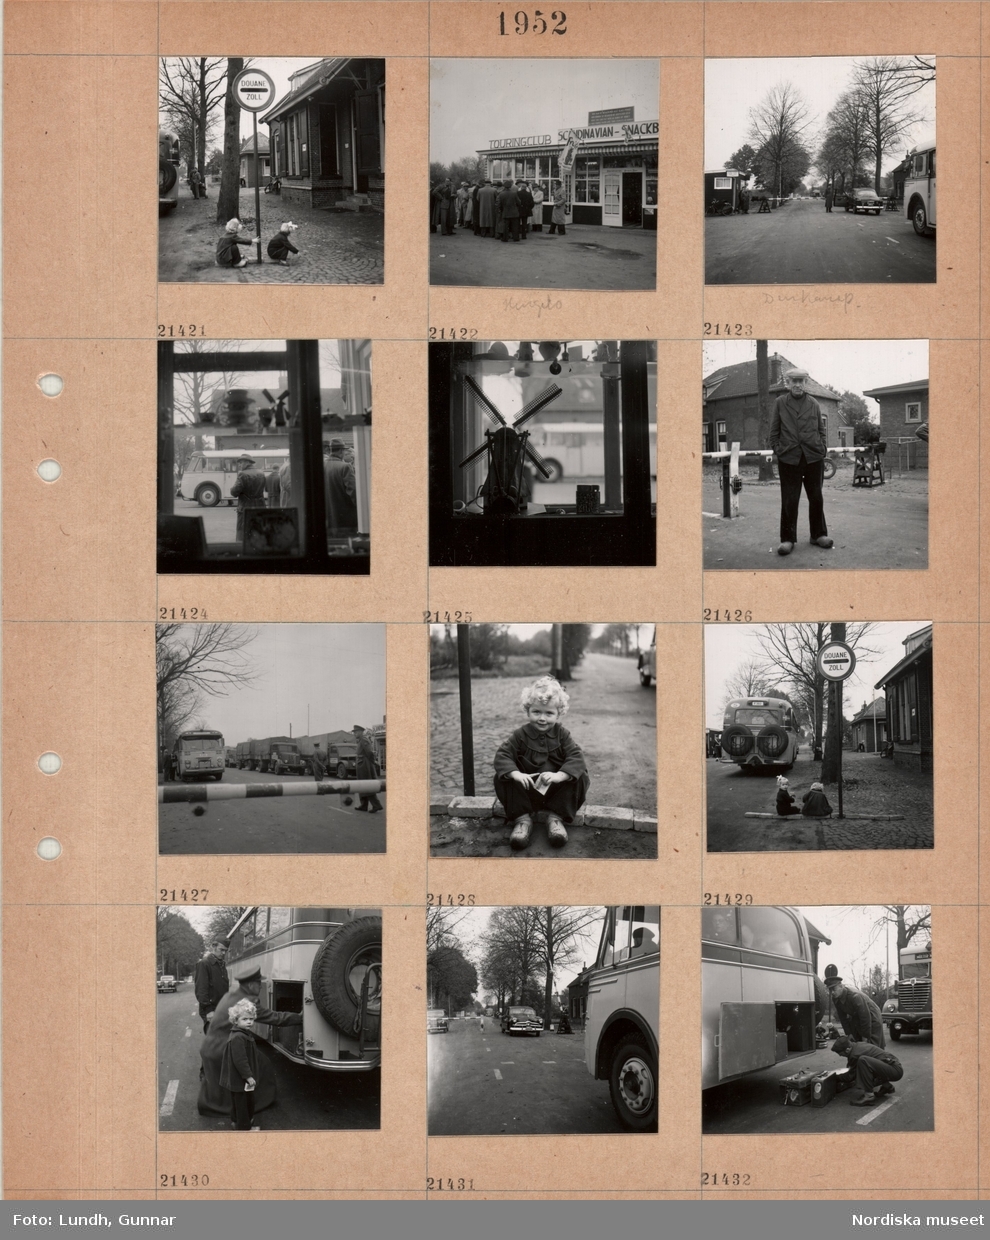 Motiv;: (ingen anteckning) ;
"Holland 21400 - 444.", gatuvy med två barn som leker vid en vägskylt "Douane Zoll", en grupp män står vid en byggnad med skylt "Touringclub Scandinavian - Snackb??", en man i uniform står vid en bil vid en vägbom, interiör med en prydnadssak i form av en väderkvarn står i ett fönster, porträtt av en man som står vid en vägbom, porträtt av ett barn som sitter på marken, två män i uniform lyfter ur bagage ur en buss.